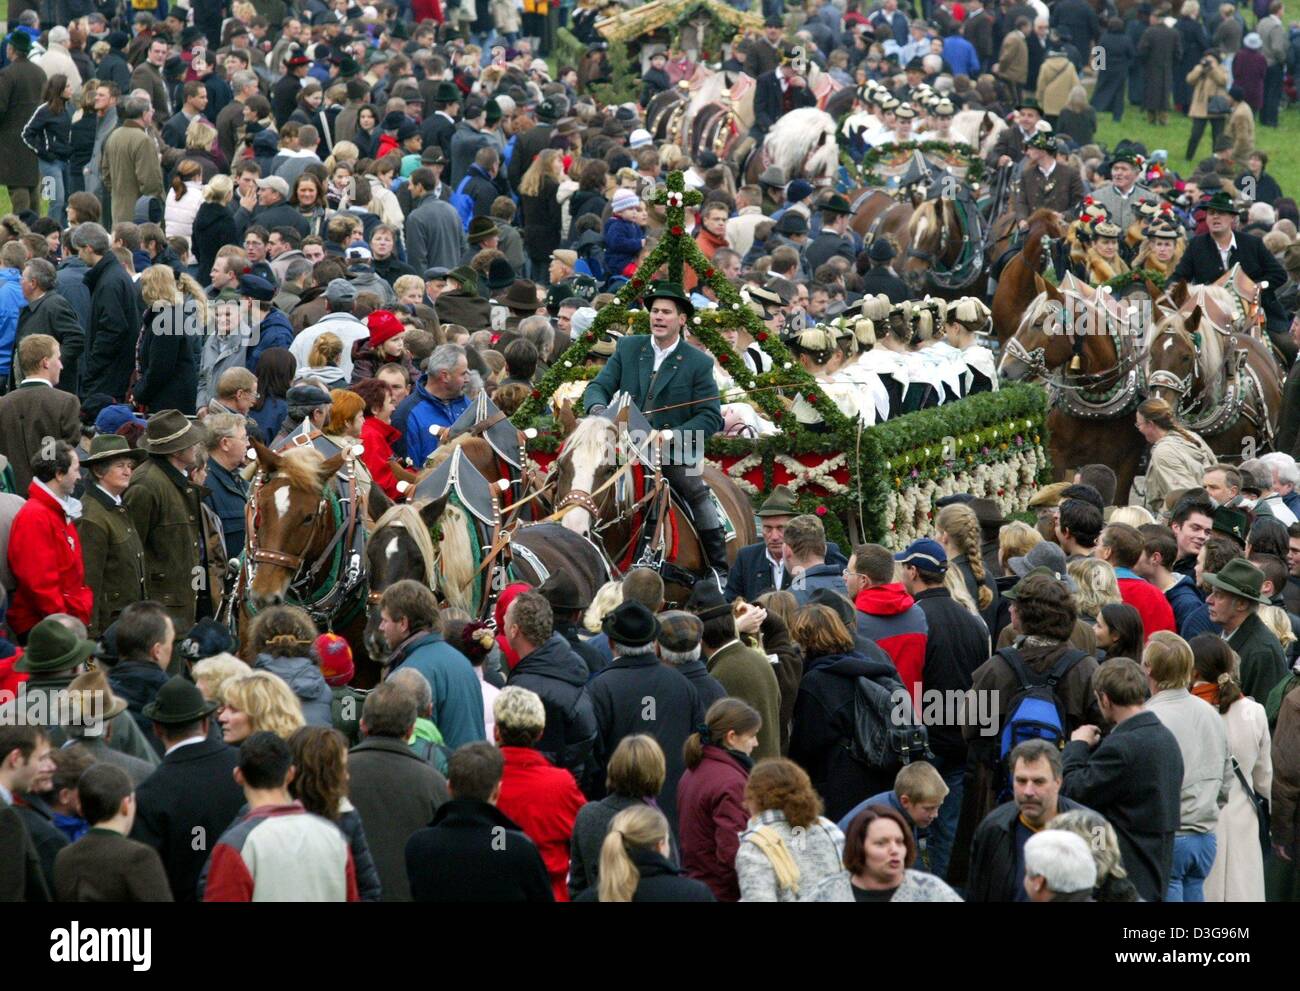 (Dpa) - folla di curiosi durante il 'Leonhardifahrt' - una processione di San Leo in onore - a Bad Toelz, Germania, 6 novembre 2004. San Leonardo è il santo patrono di capi di bestiame e la festa del santo è una parte molto importante di vacanza per i contadini locali. Foto Stock